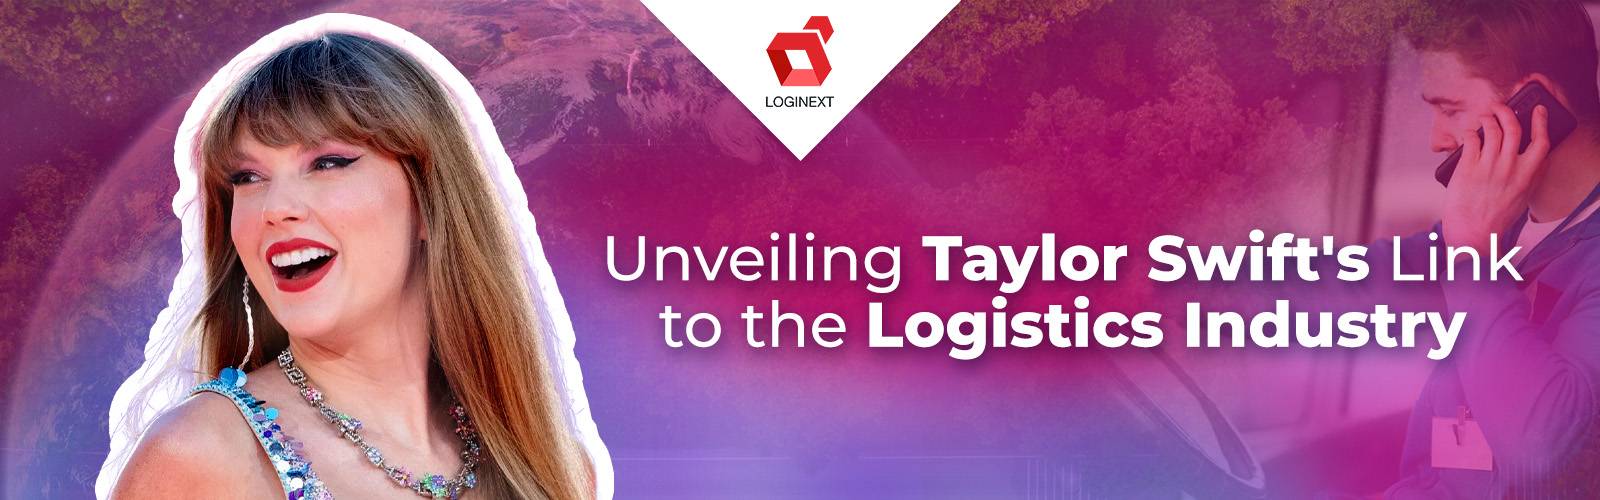 Conectando la música de Taylor Swift y la industria logística